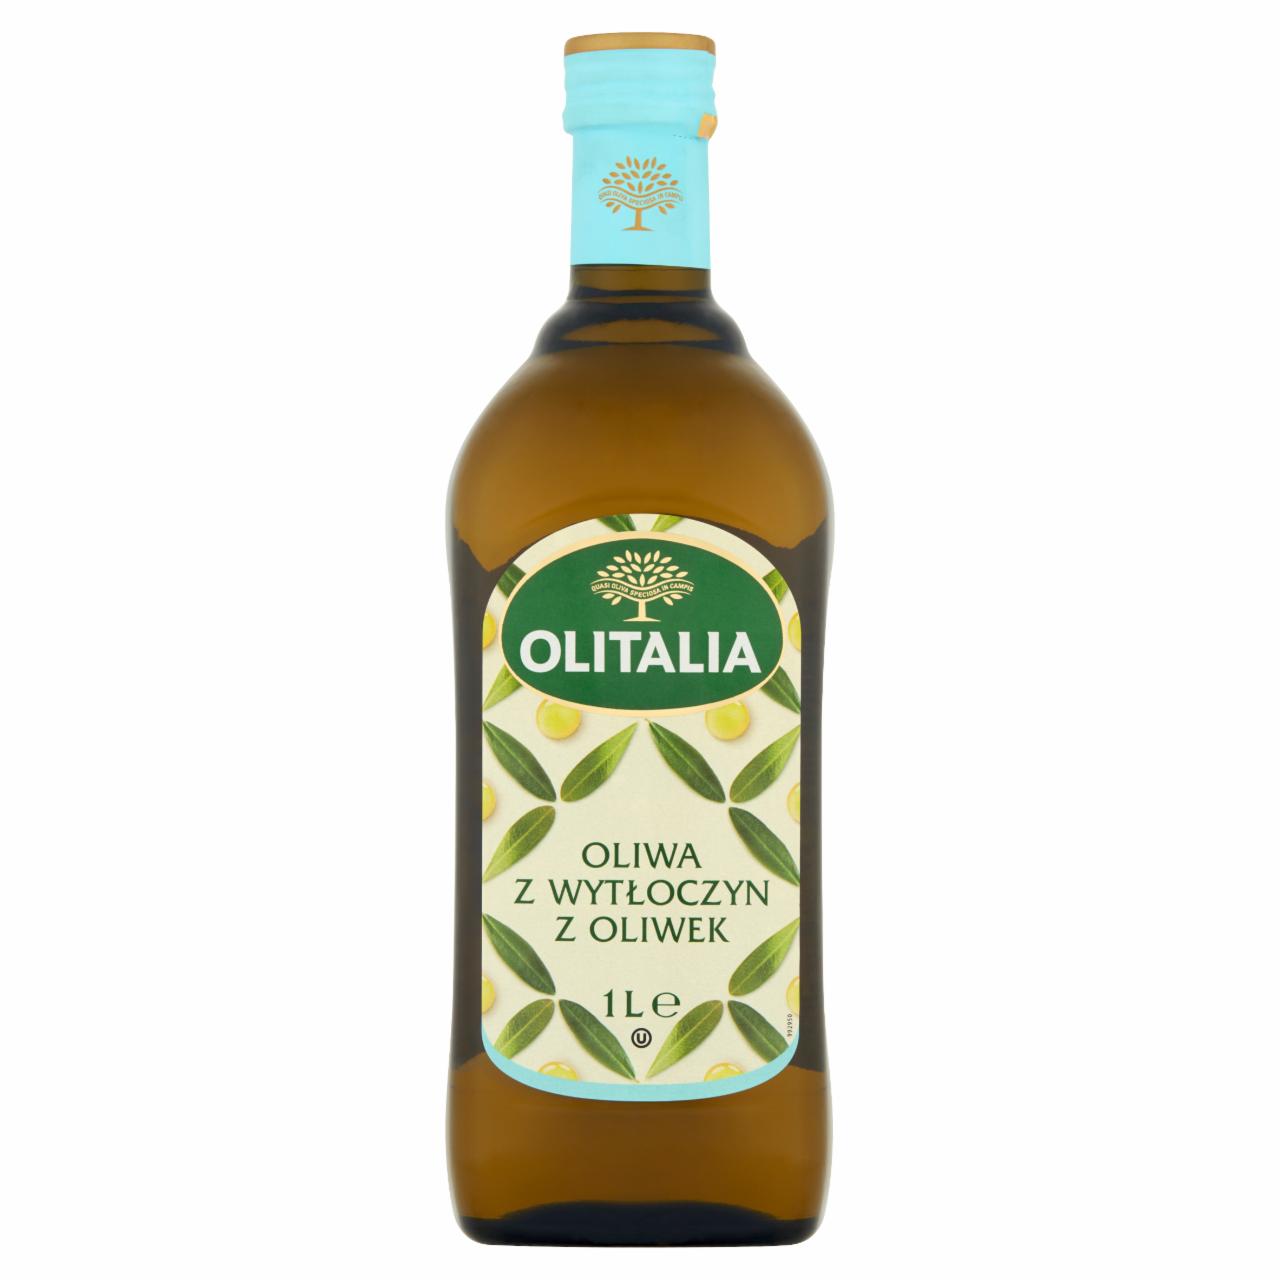 Zdjęcia - Olitalia Oliwa z wytłoczyn z oliwek 1 l